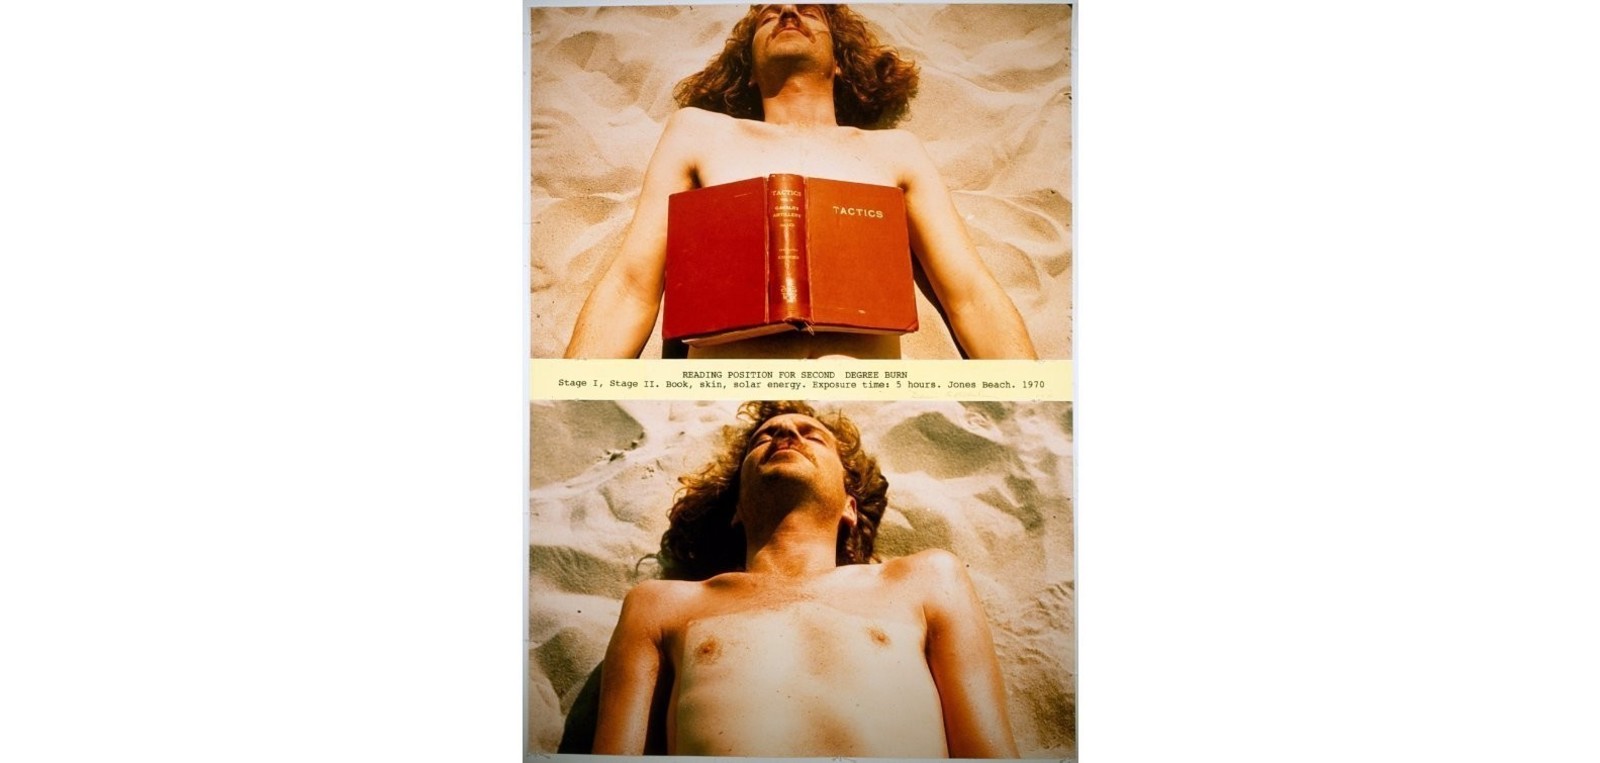 Деннис Оппенгейм  Чтение в позиции для второй степени ожога. 1970  Книга, кожа, солнечная энергия  Время экспозиции: 5 часов  Jones Beach, Нью-Йорк